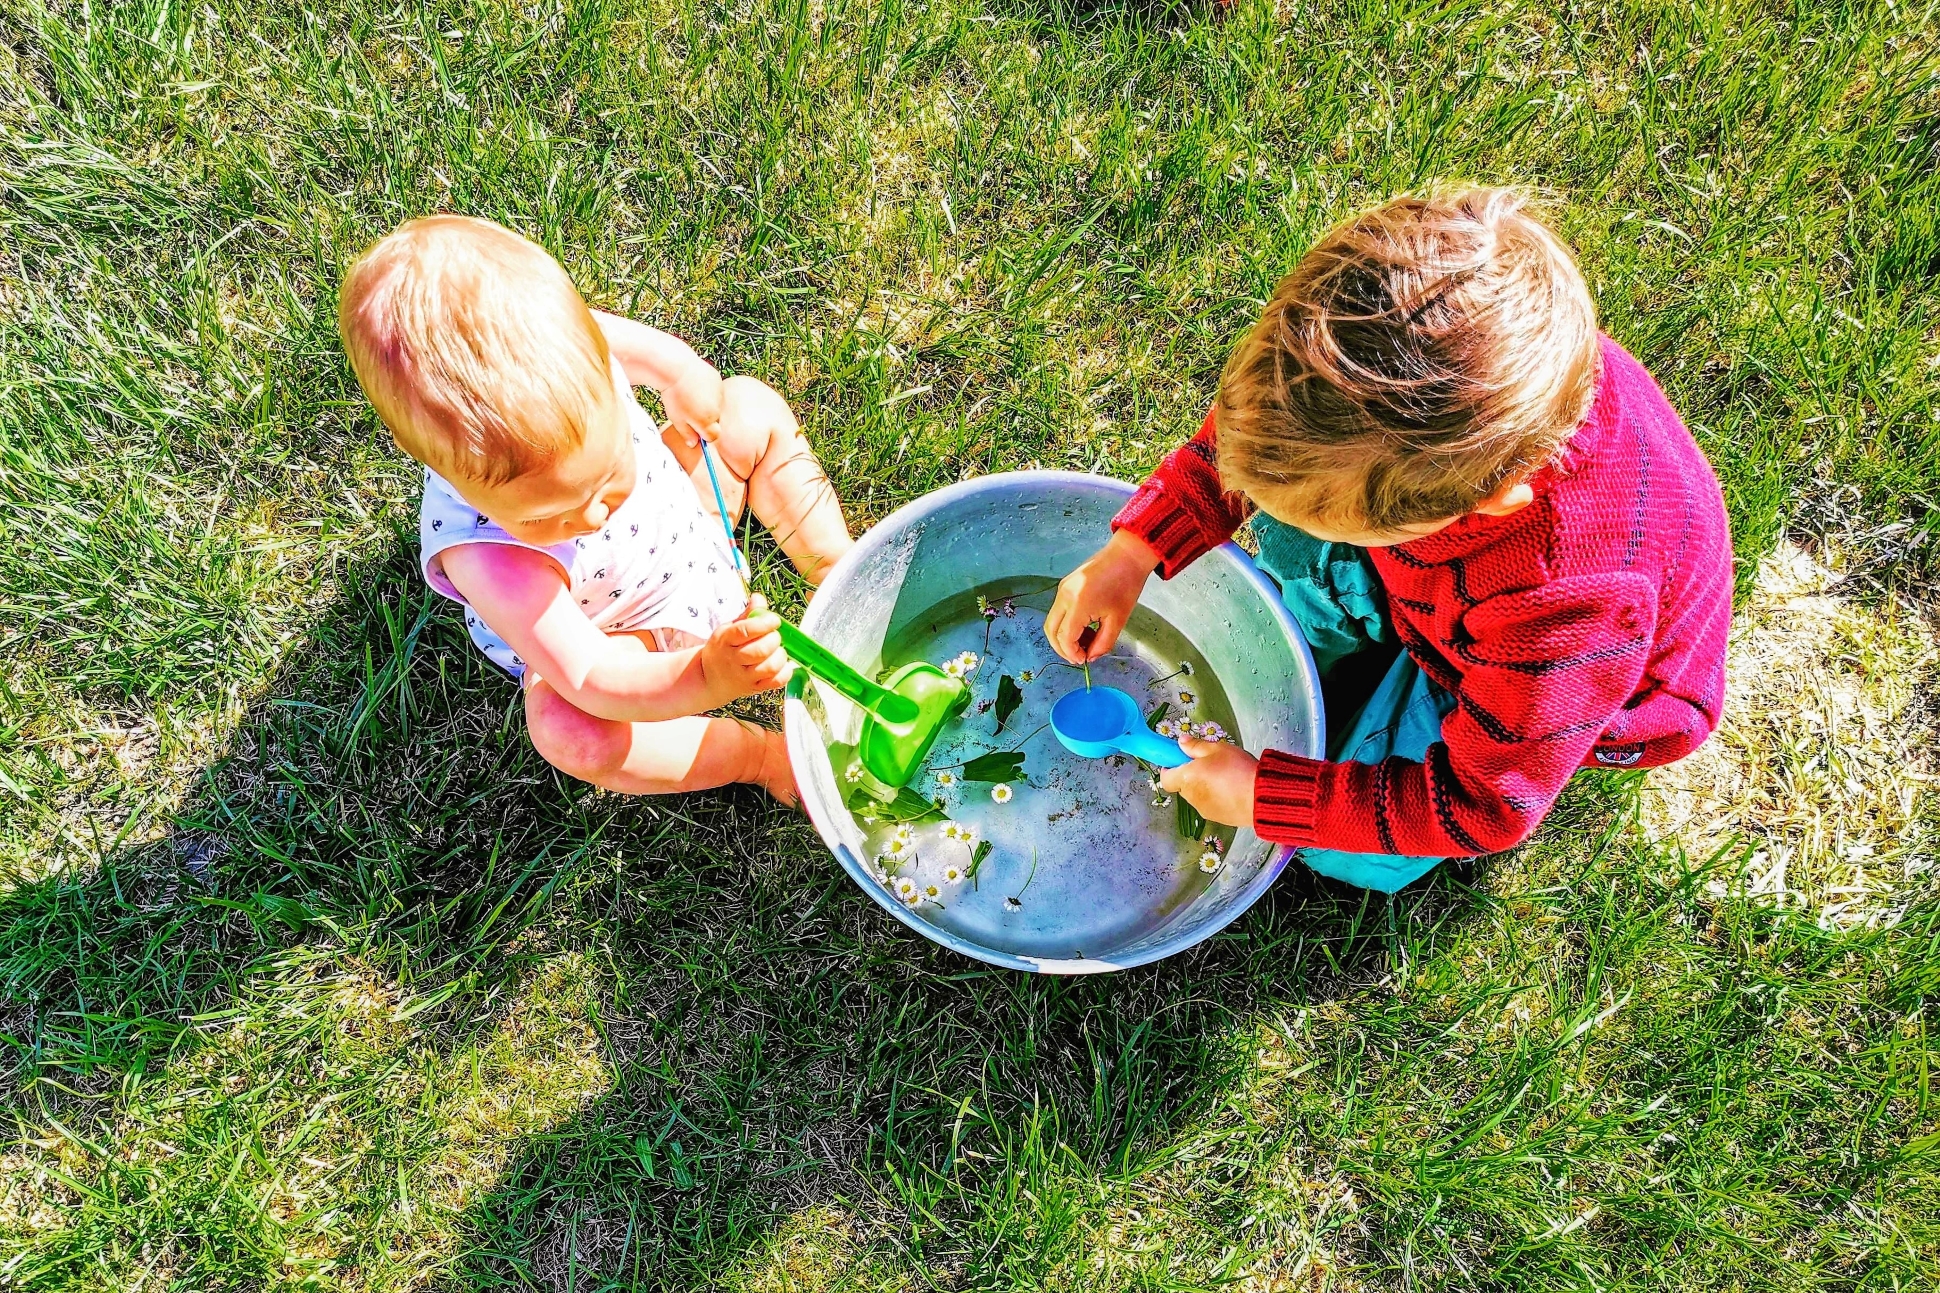 Kinder spielen im Garten gern mit Naturmaterialien. Eine Schüssel und verschiedene Gräser und Pflanzen sind oft genug.